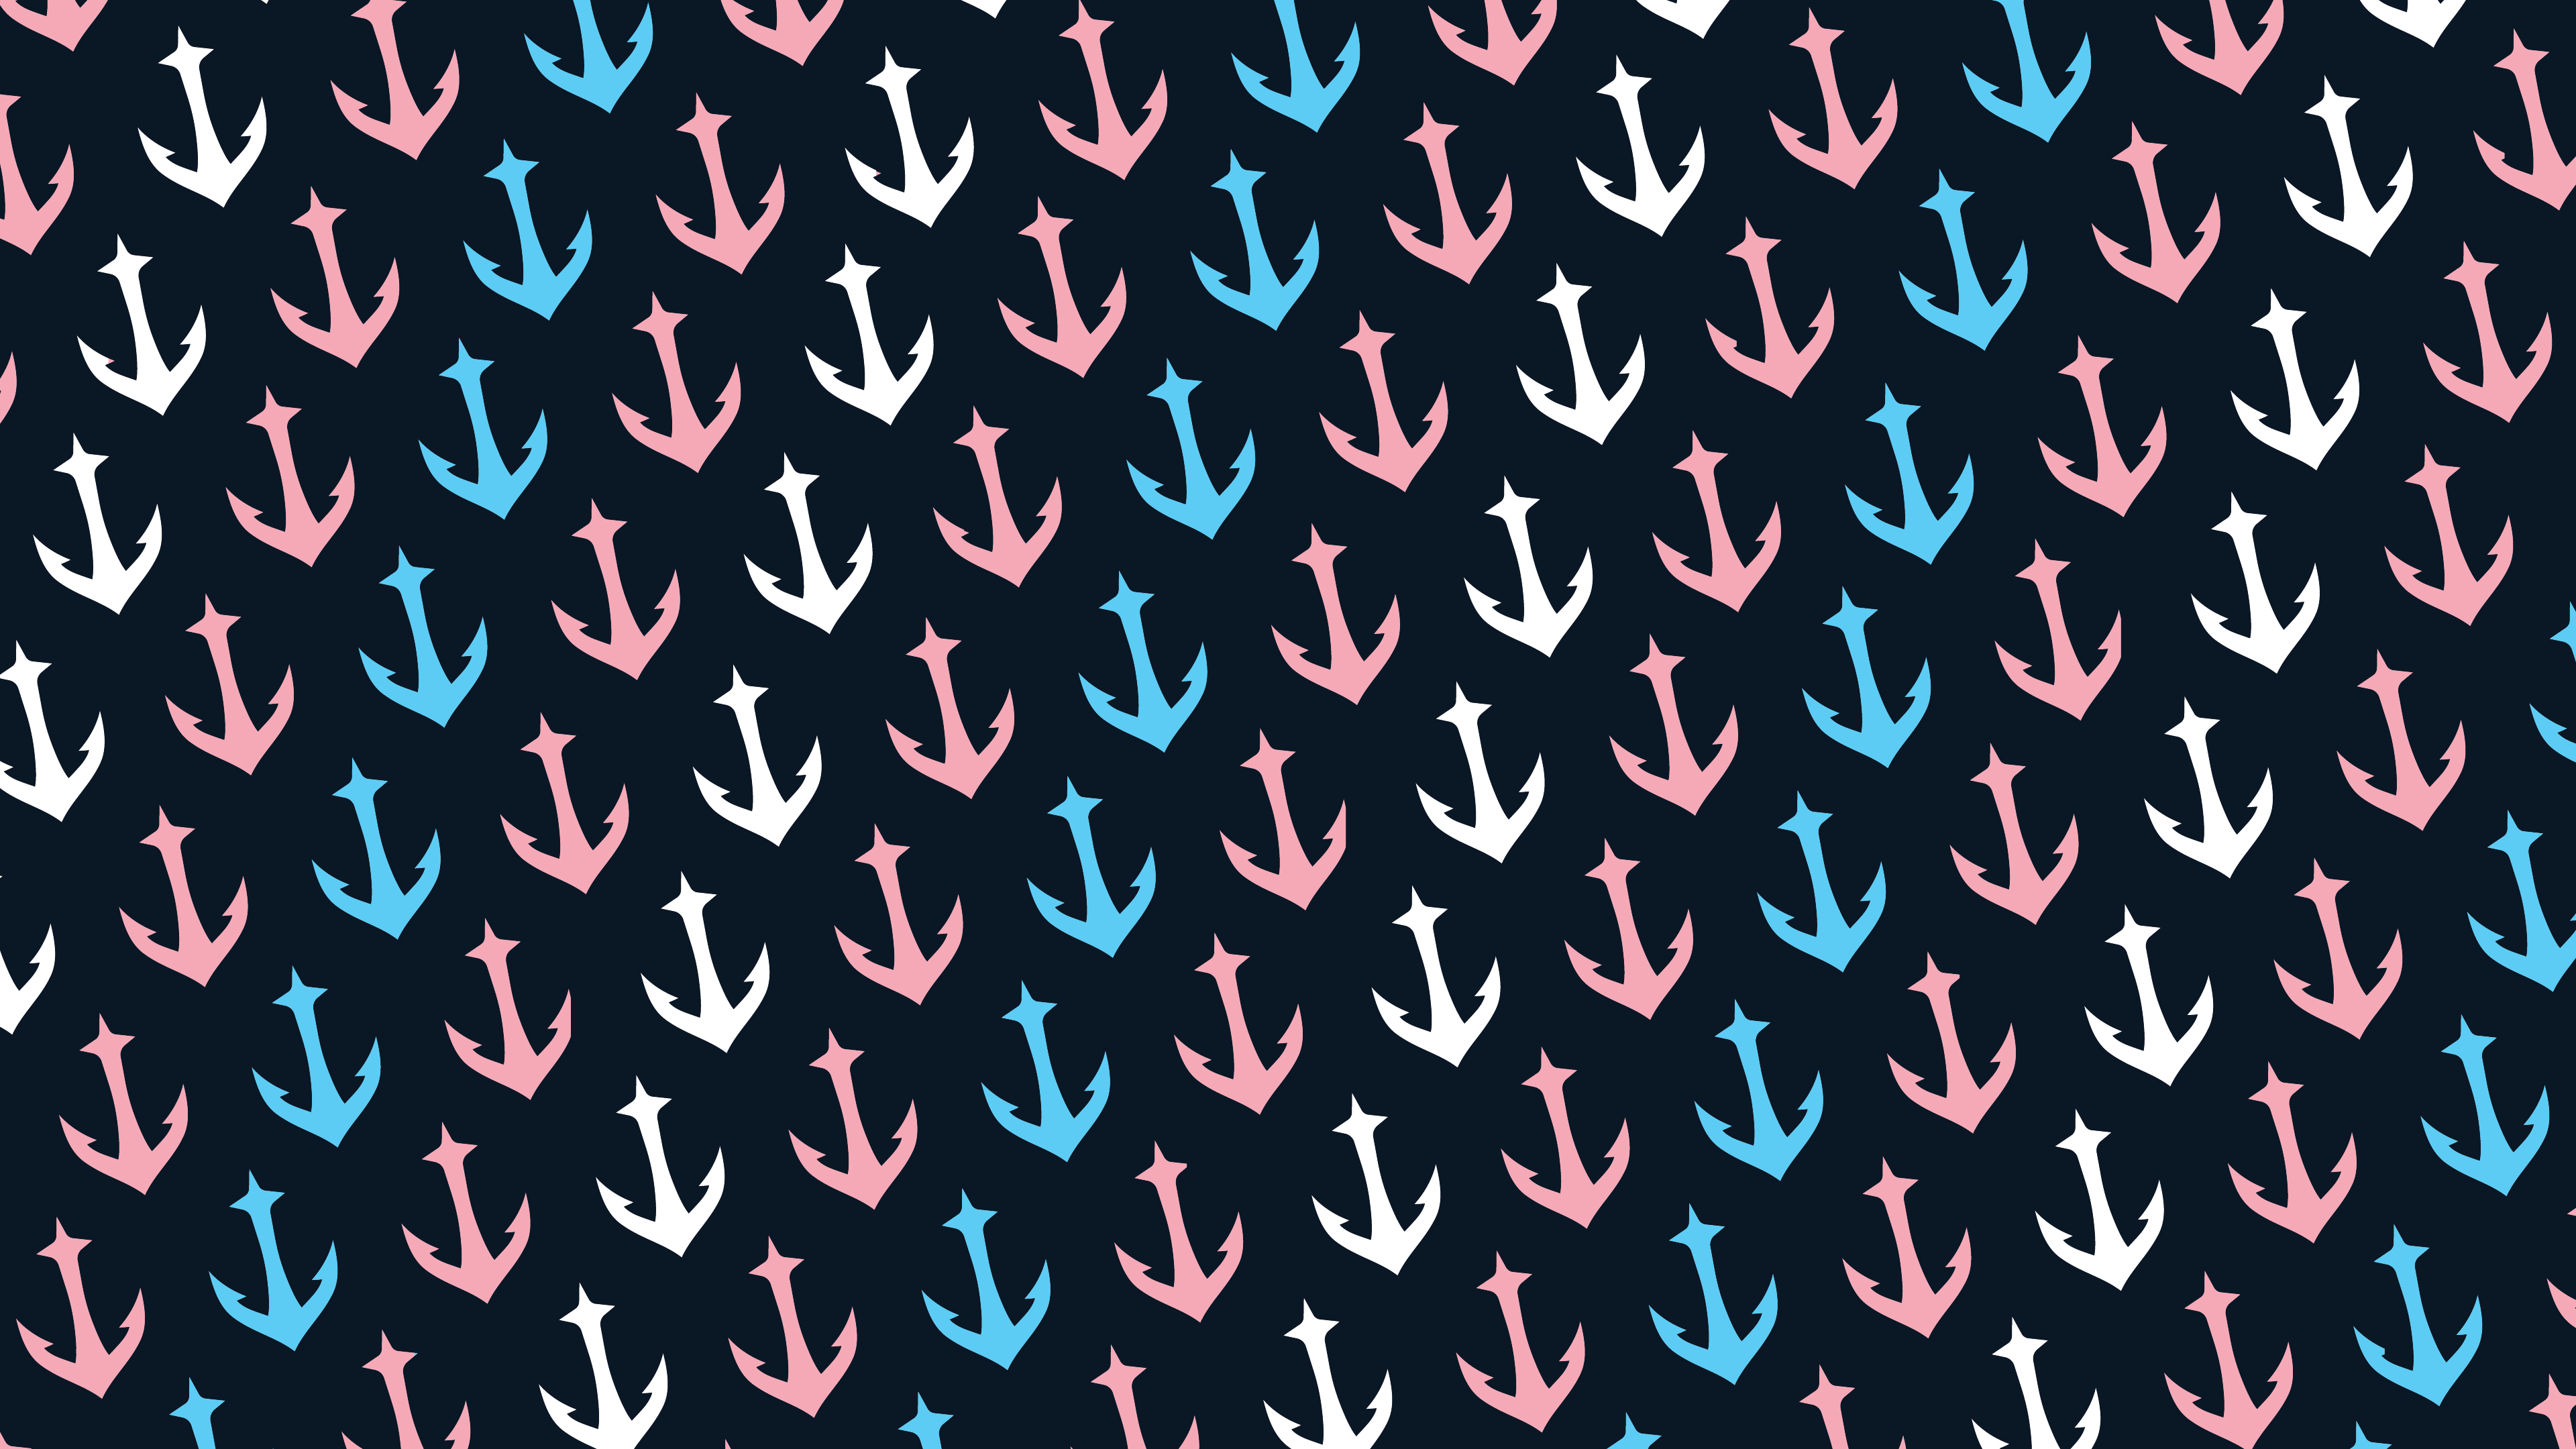 kraken iphone wallpaper